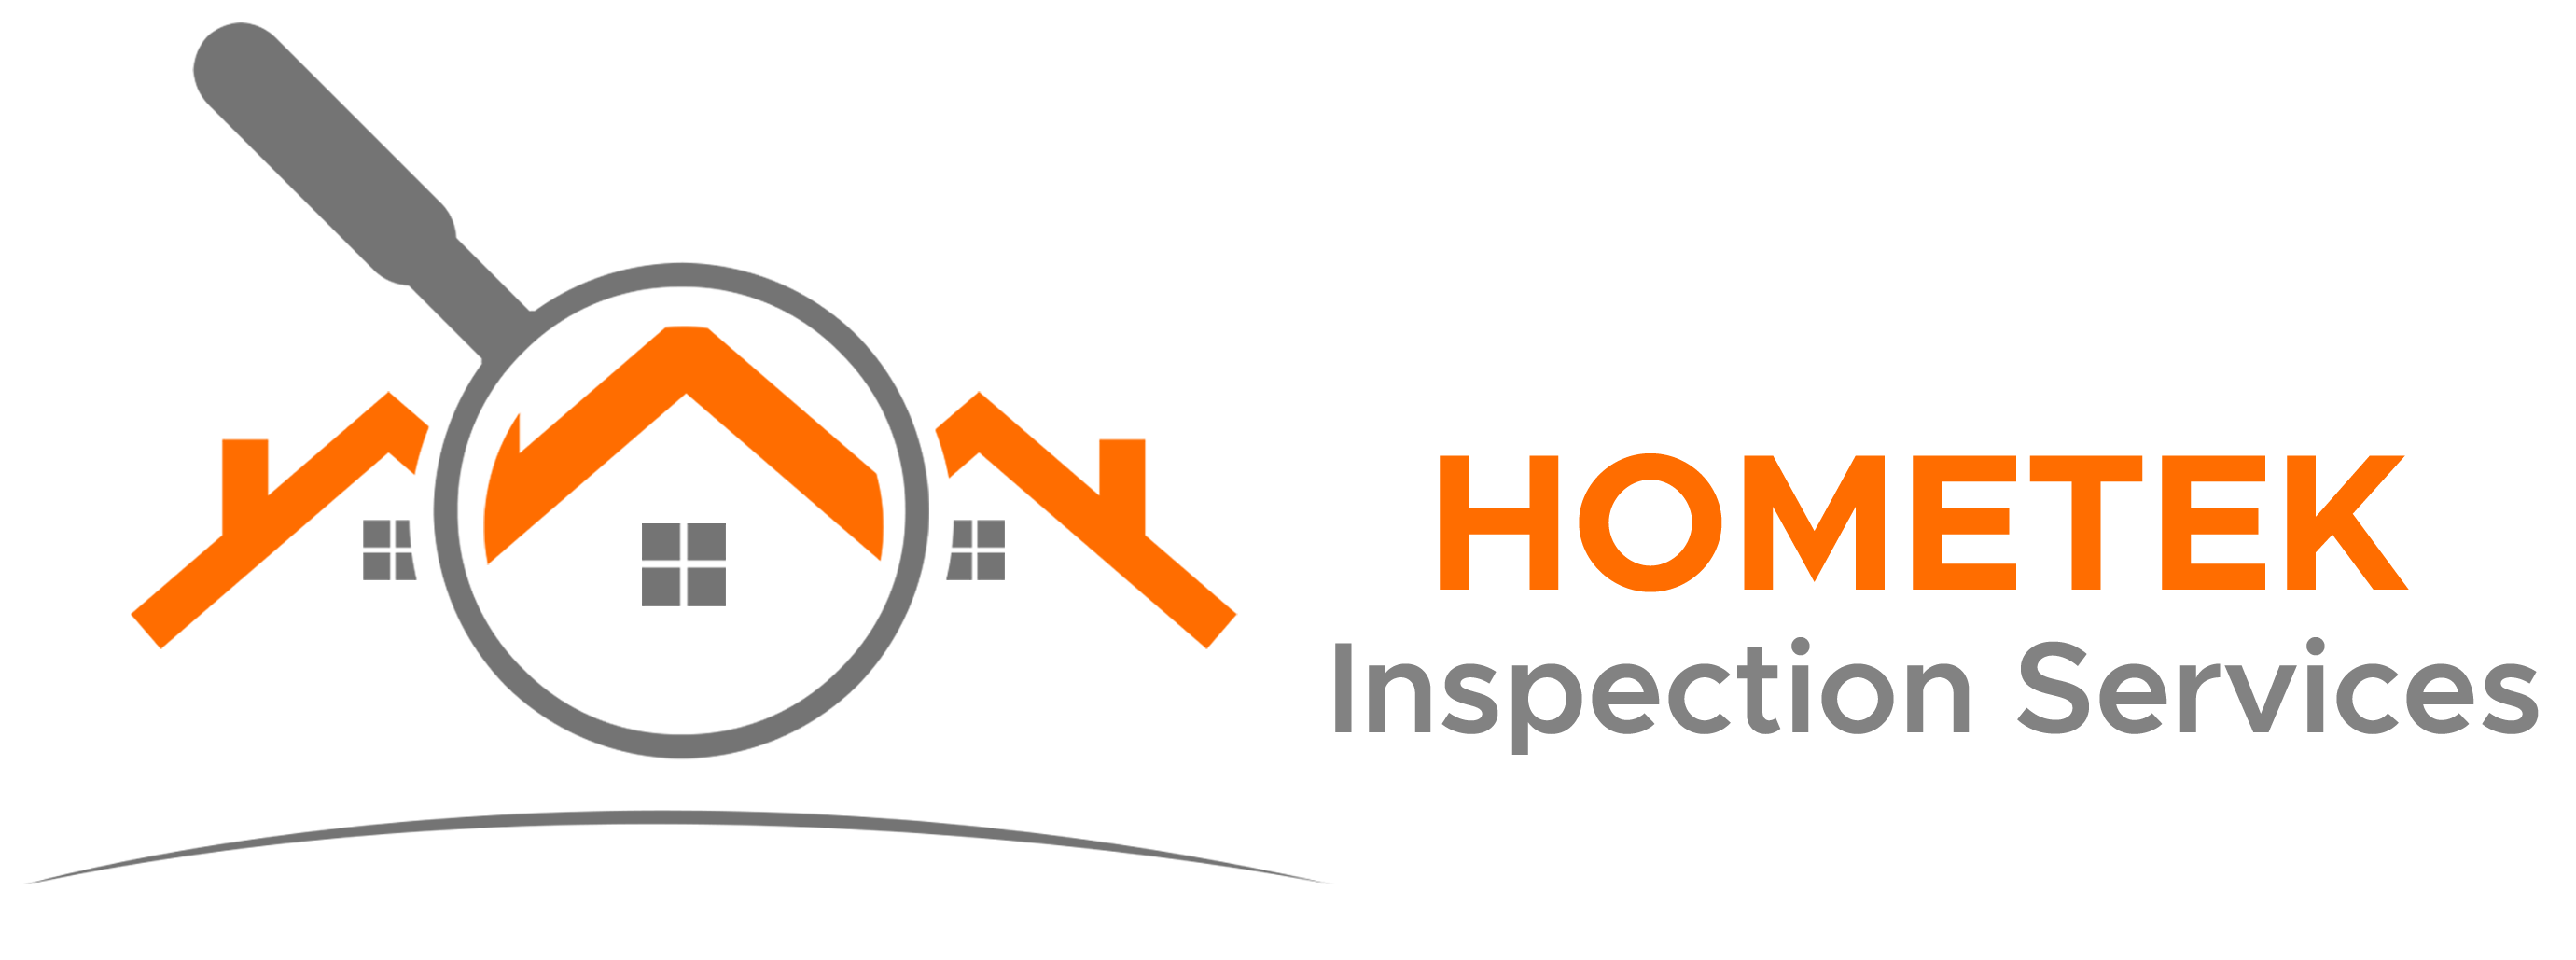 Hometek Inspection Services